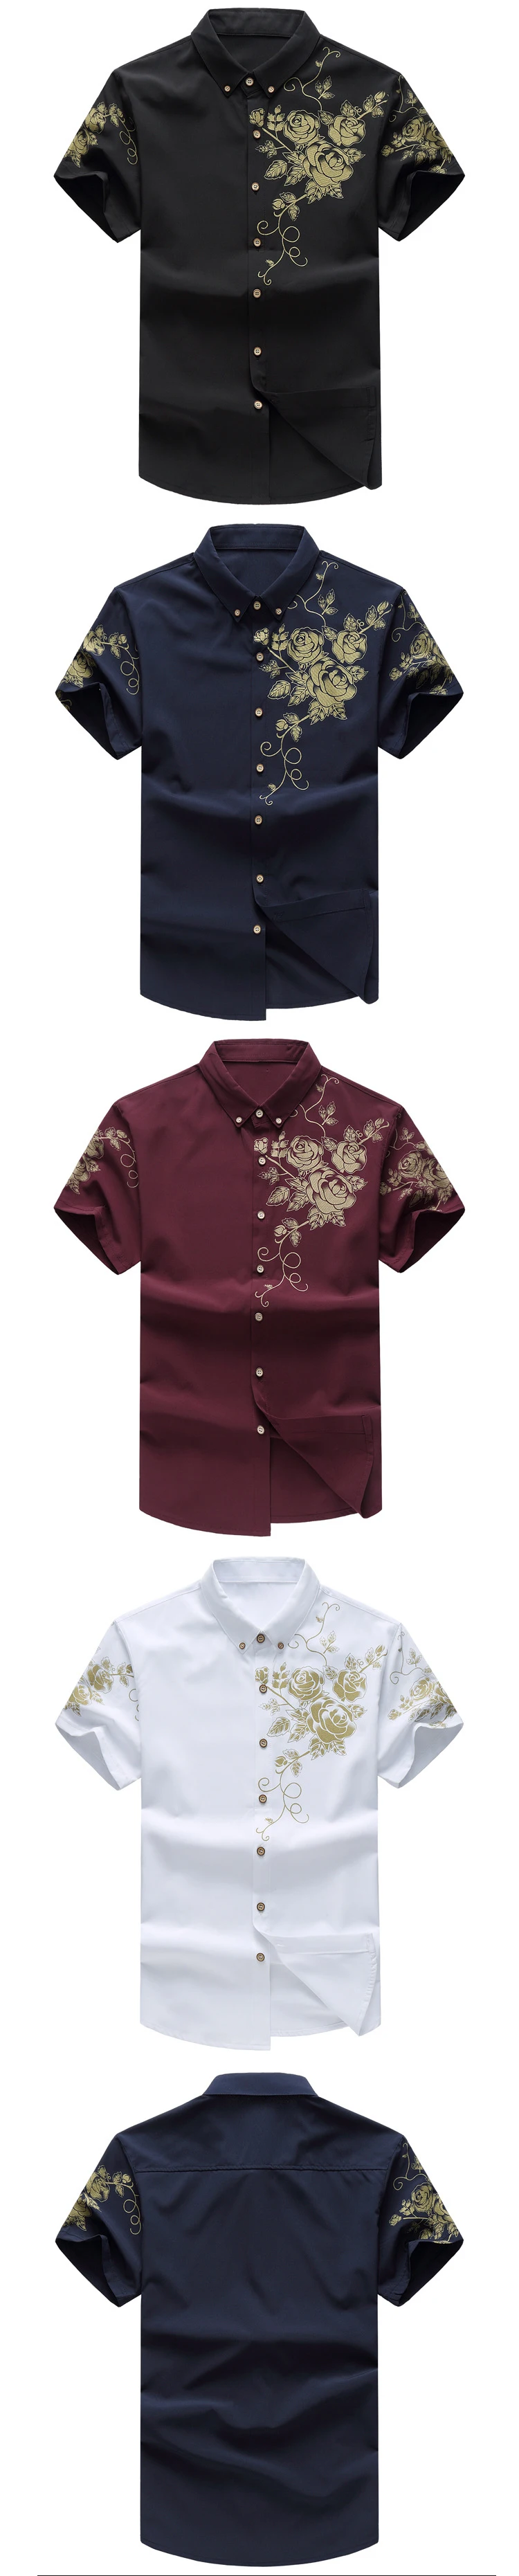 Летняя мужская рубашка модная с цветочным принтом Мужская Повседневная рубашка с коротким рукавом большой размер брендовая мужская одежда 5XL 6XL